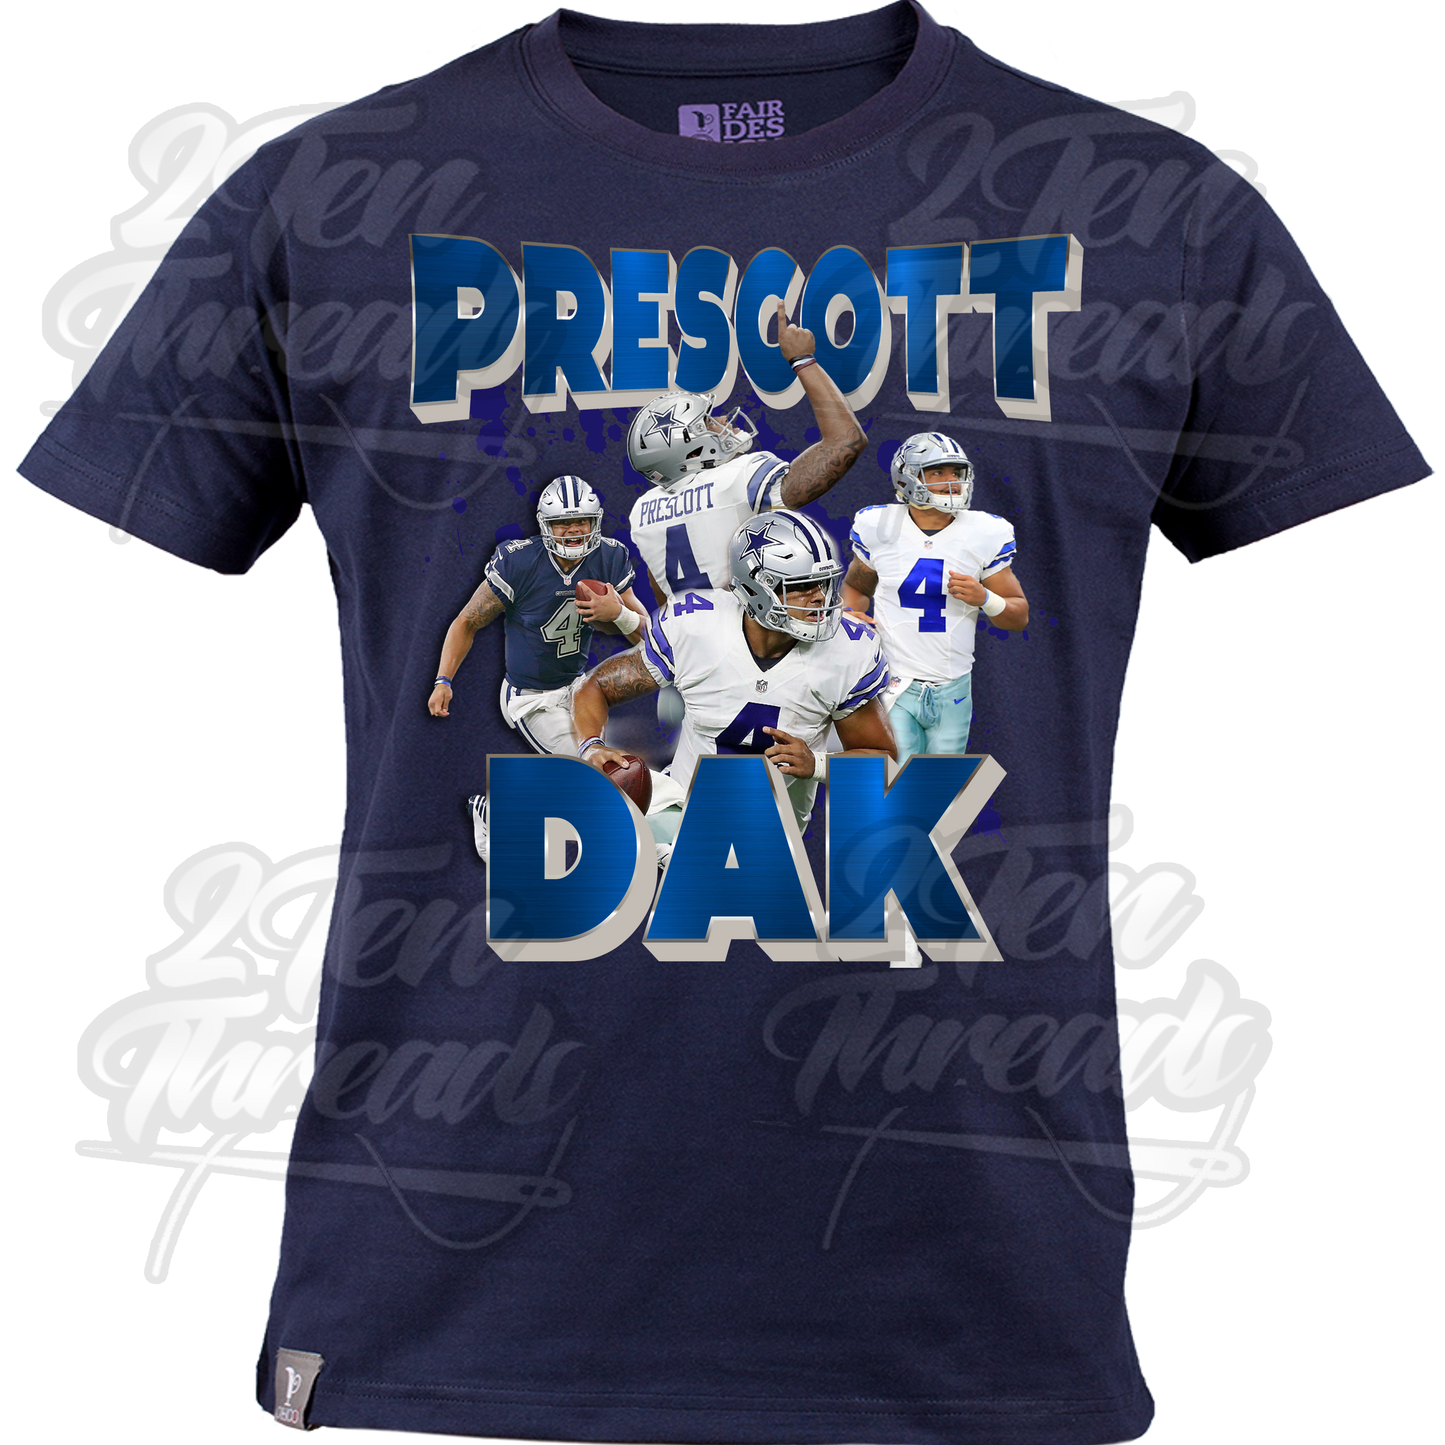 Dak Prescott T-Shirt